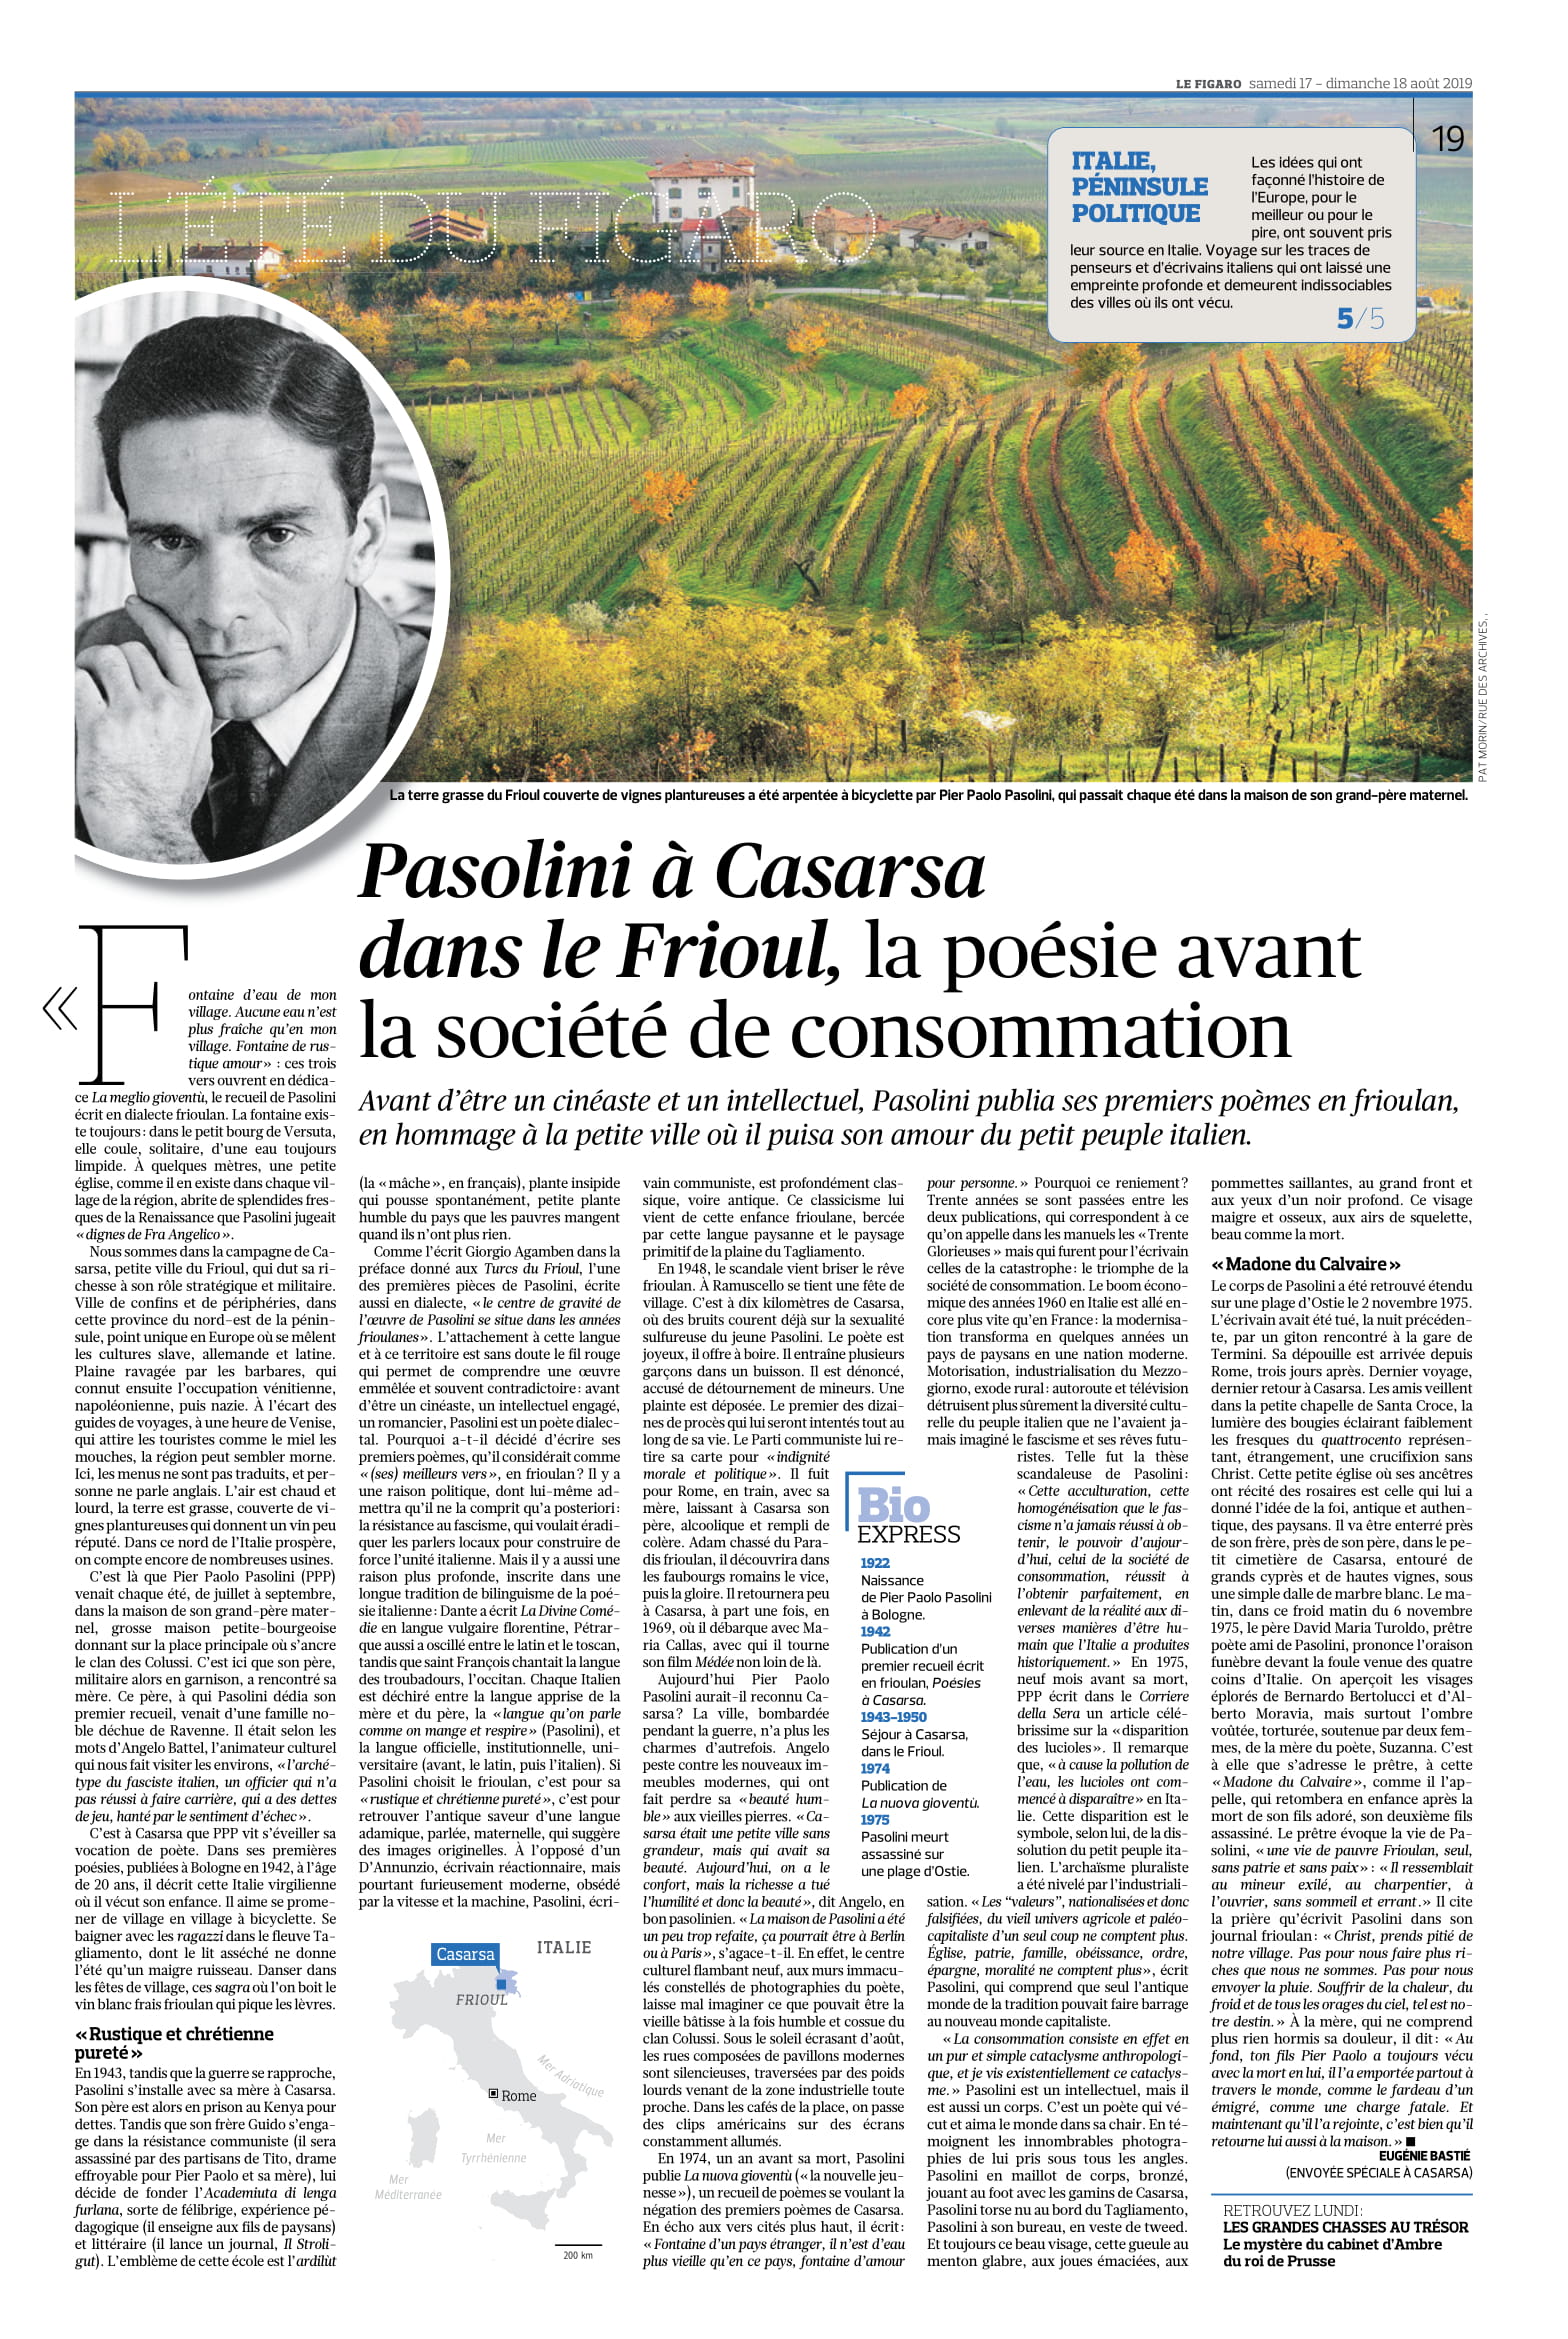 Le Figarò - Pasolini a Casarsa dans le Frioul...17-08-2019-1